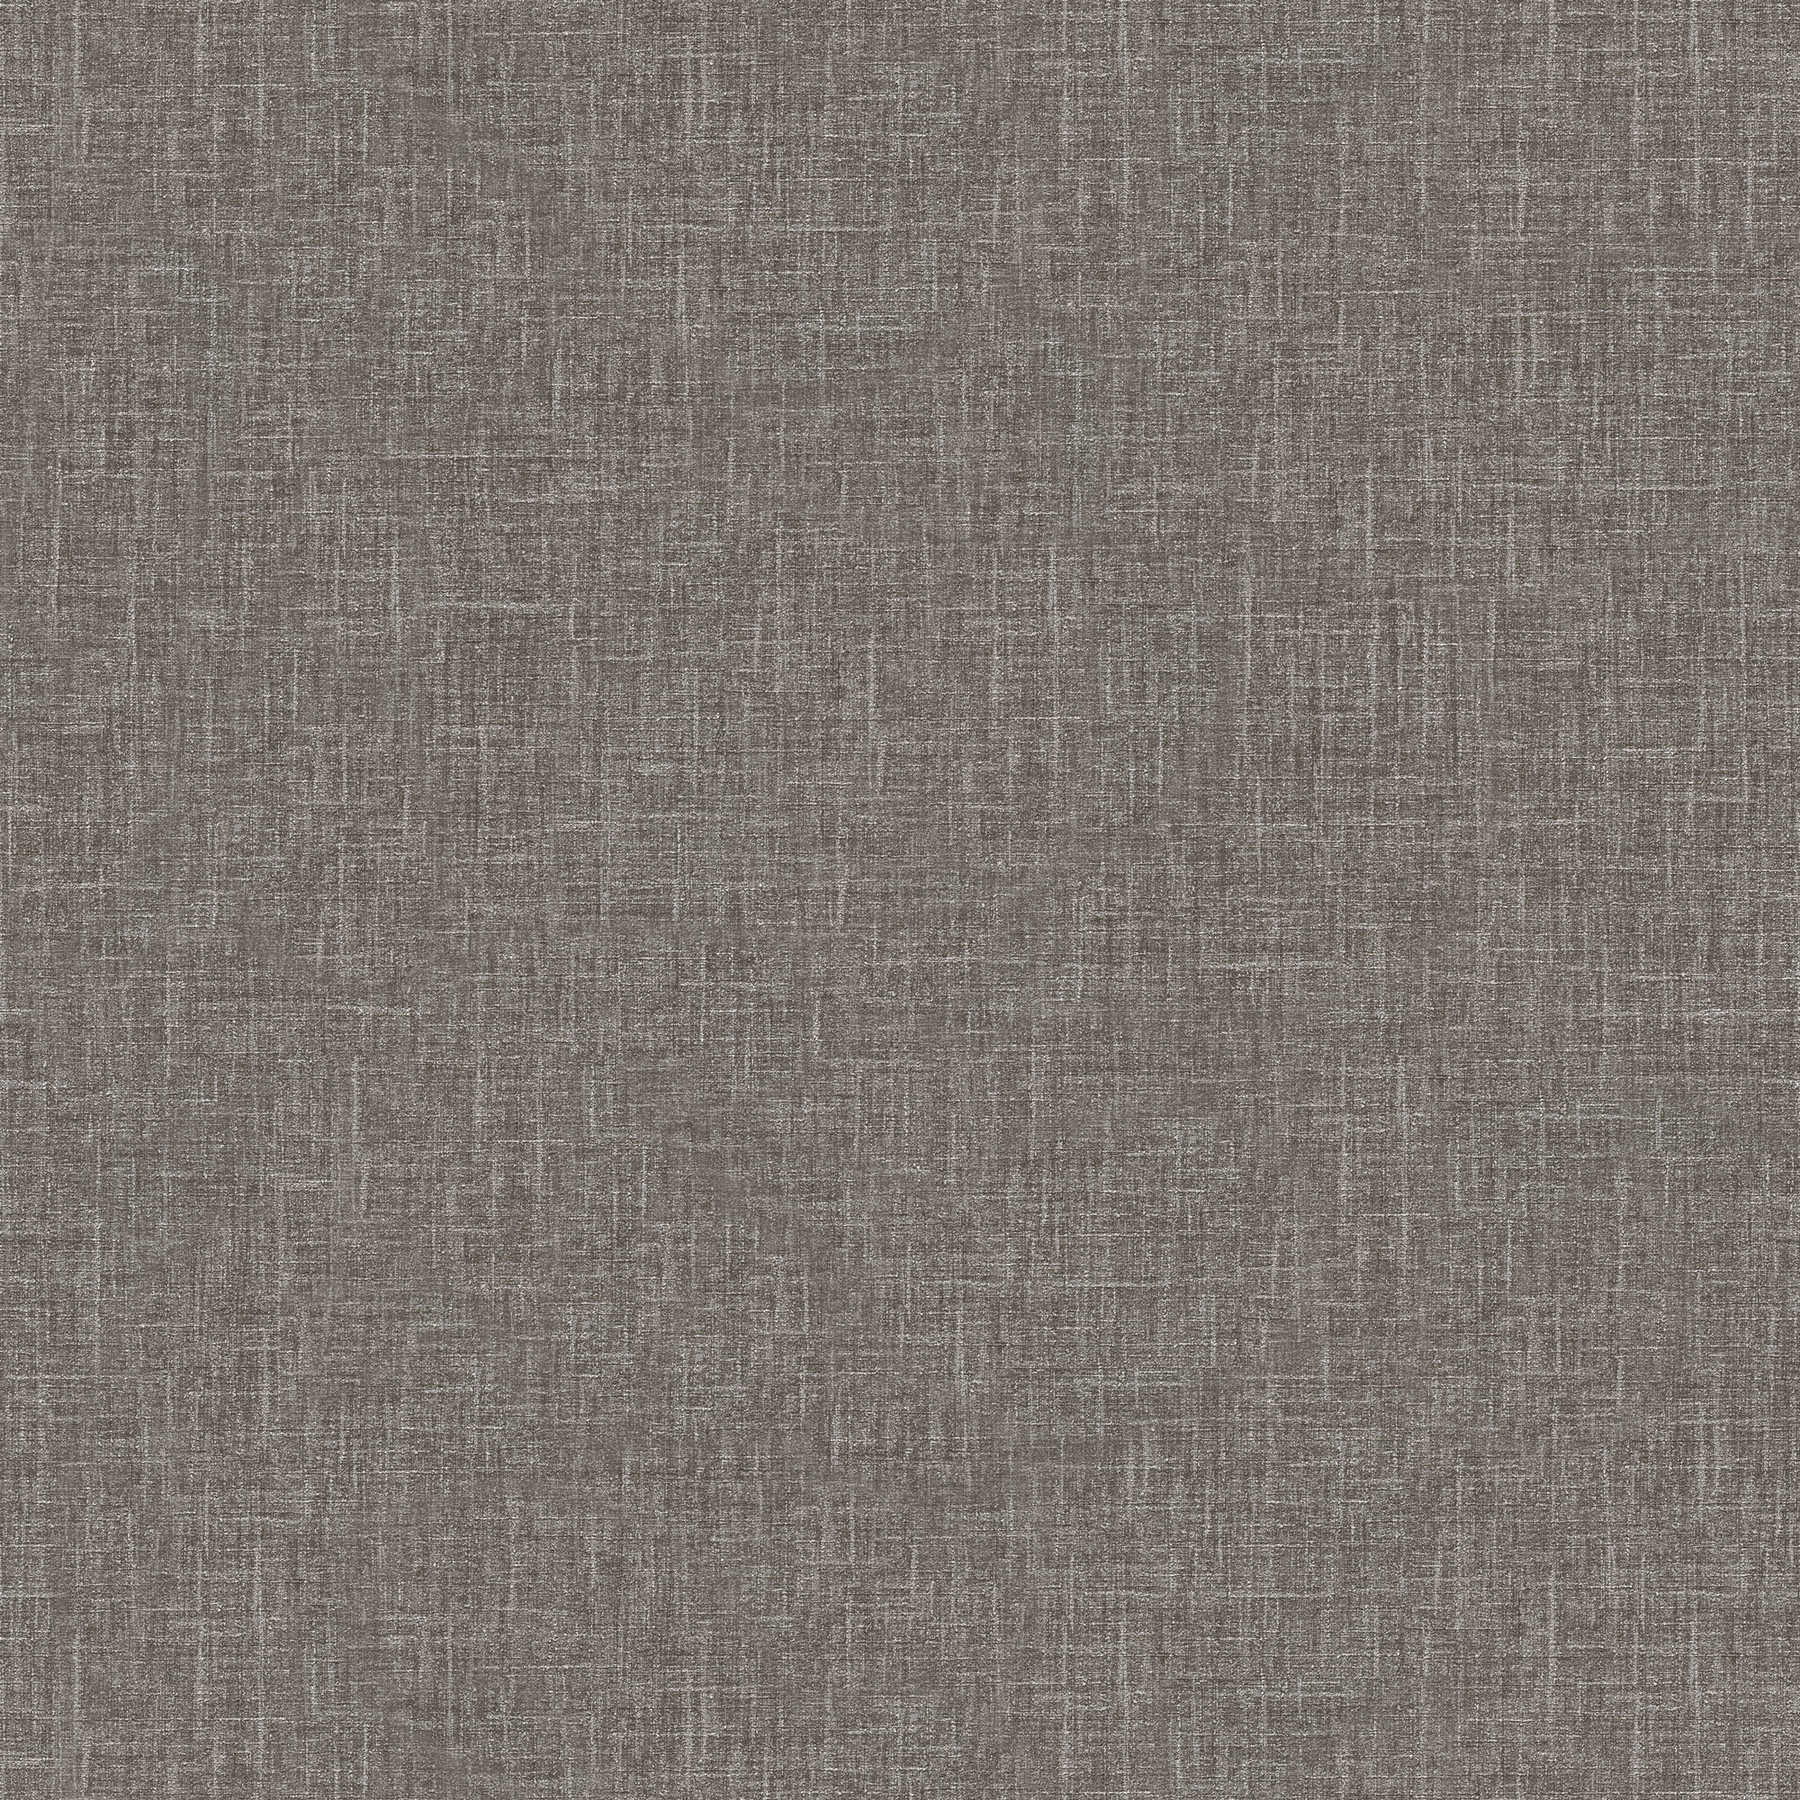 VERSACE plain wallpaper - grey mottled in linen look - grey
